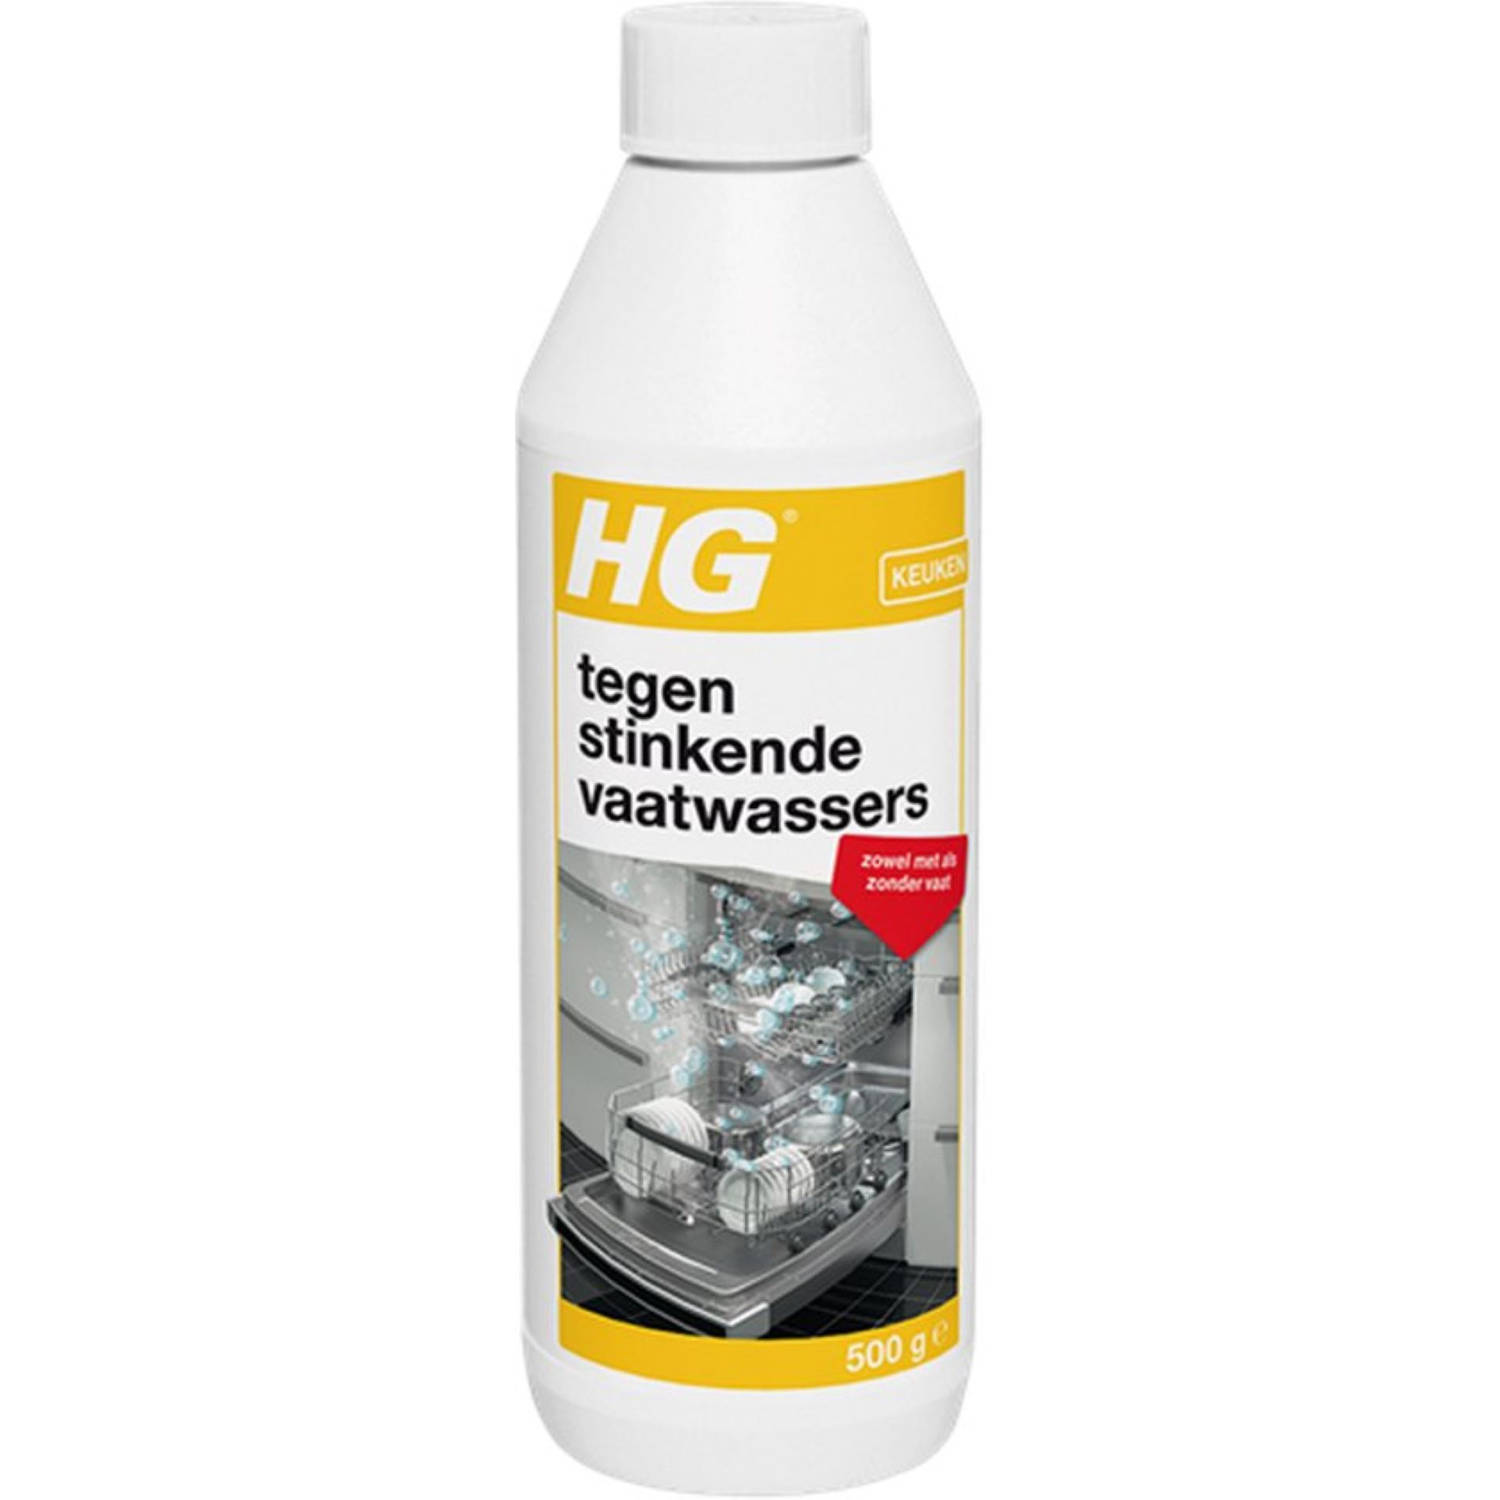 HG tegen stinkende vaatwasser -500G 2 Stuks !